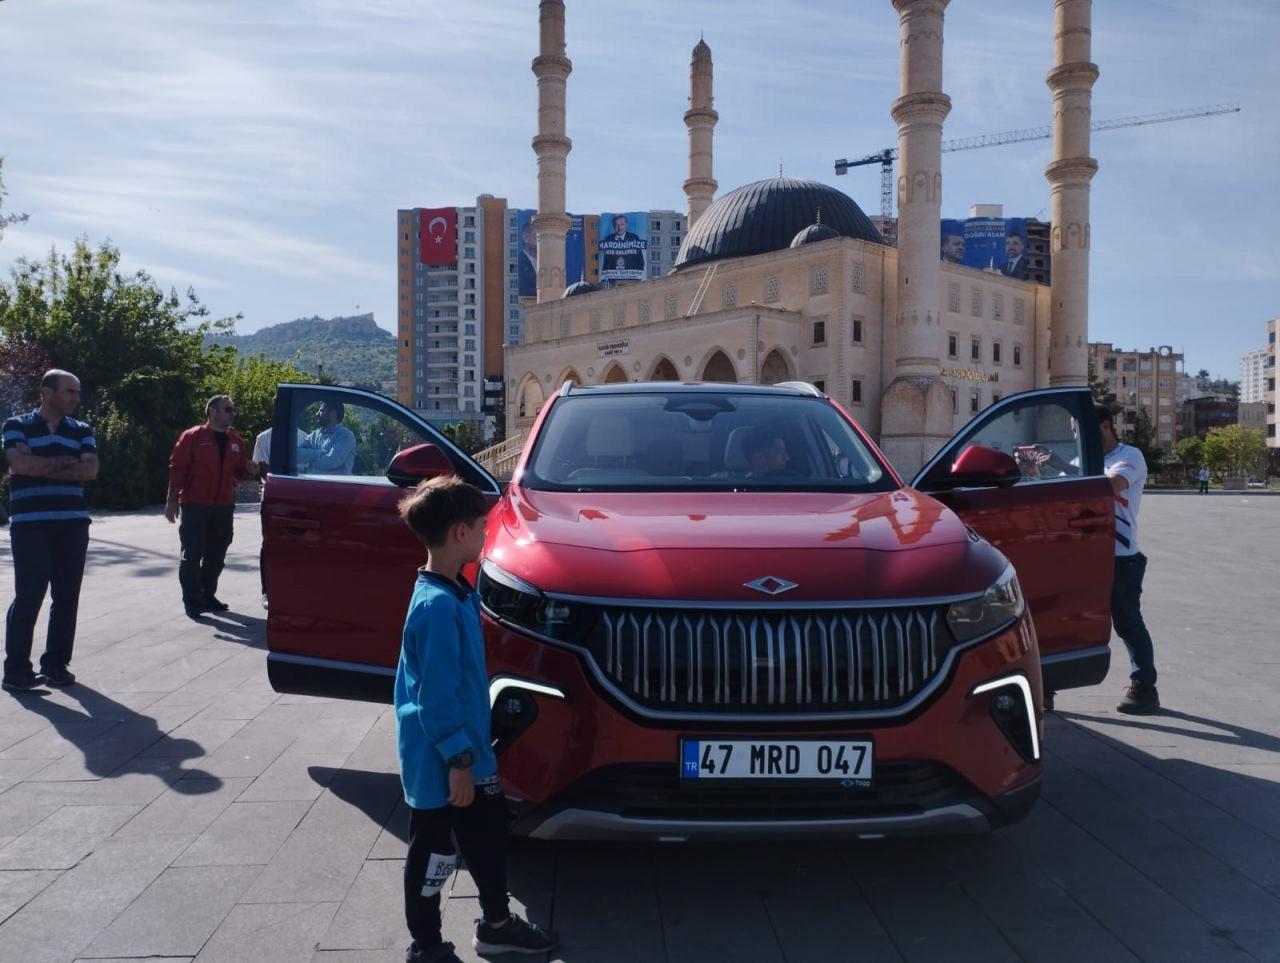 Yerli ve milli otomobil Togg'a Mardin'de büyük ilgi